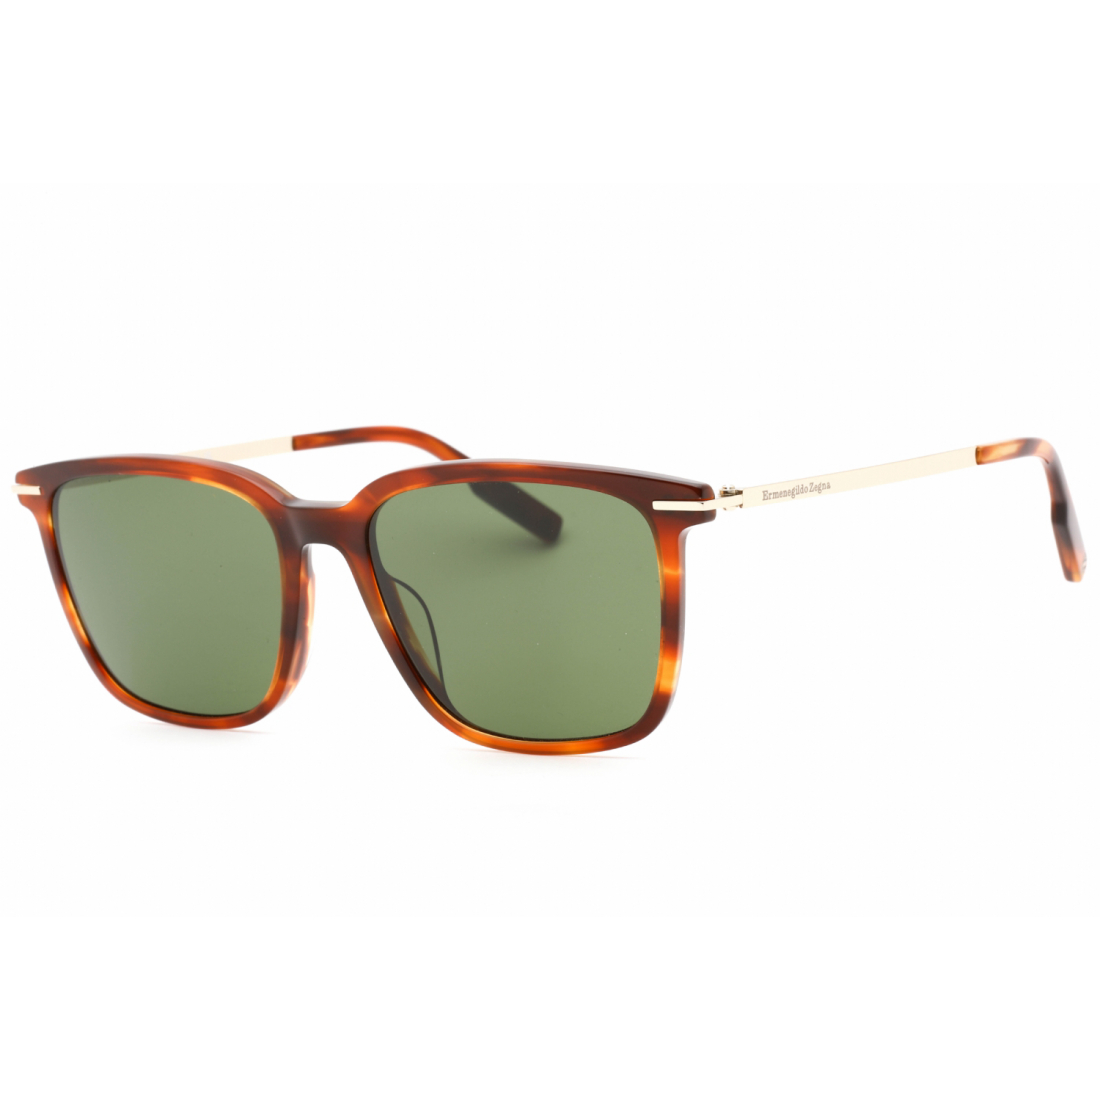 Men's 'EZ0206' Sunglasses